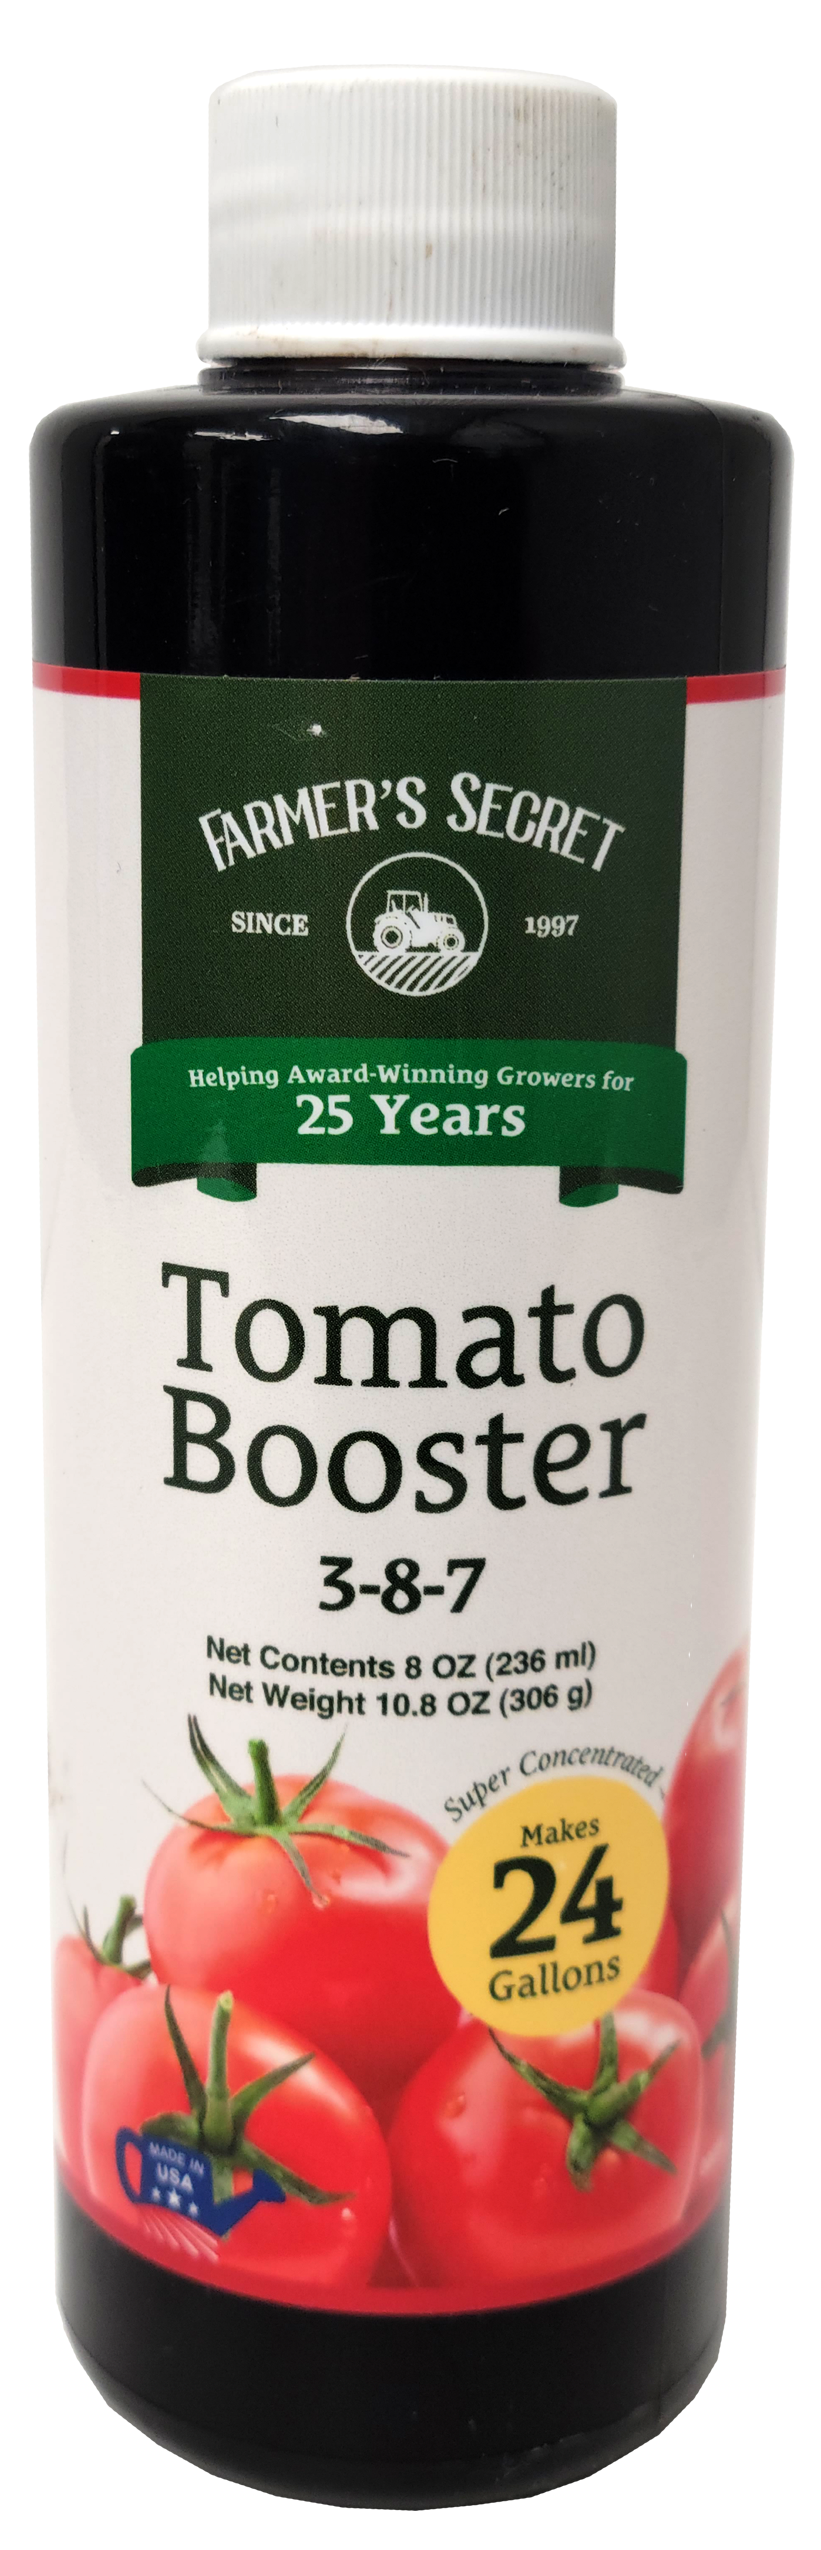 Tomato Booster